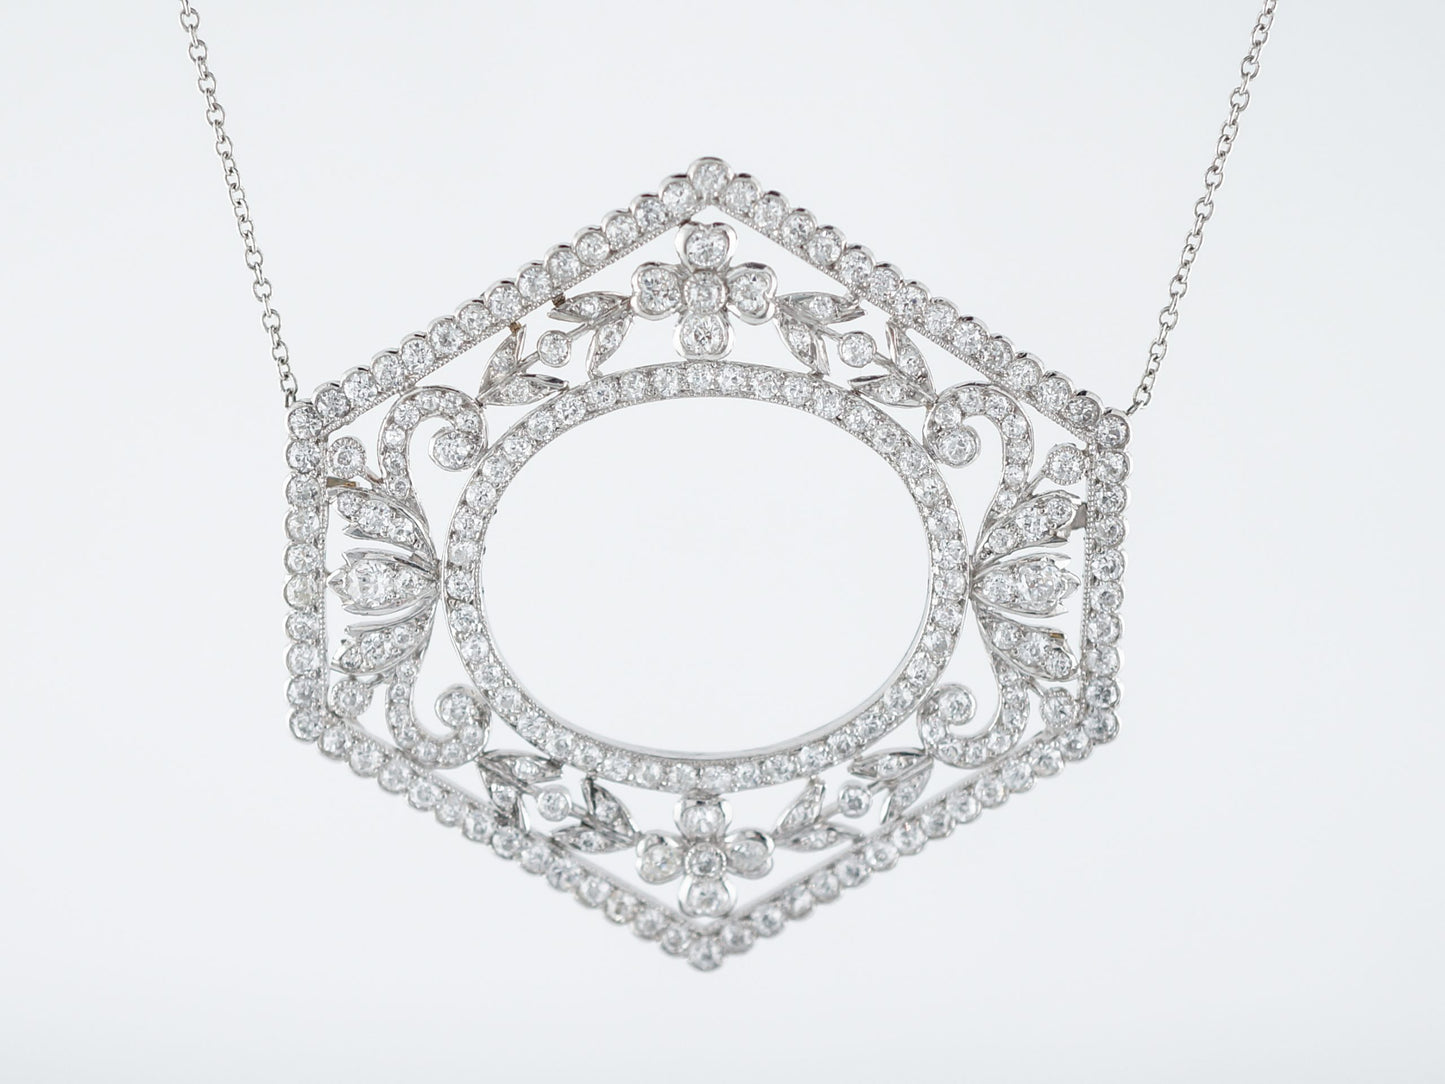 Antique Necklace Art Deco 5.00 Old European Cut Diamonds in Platinum